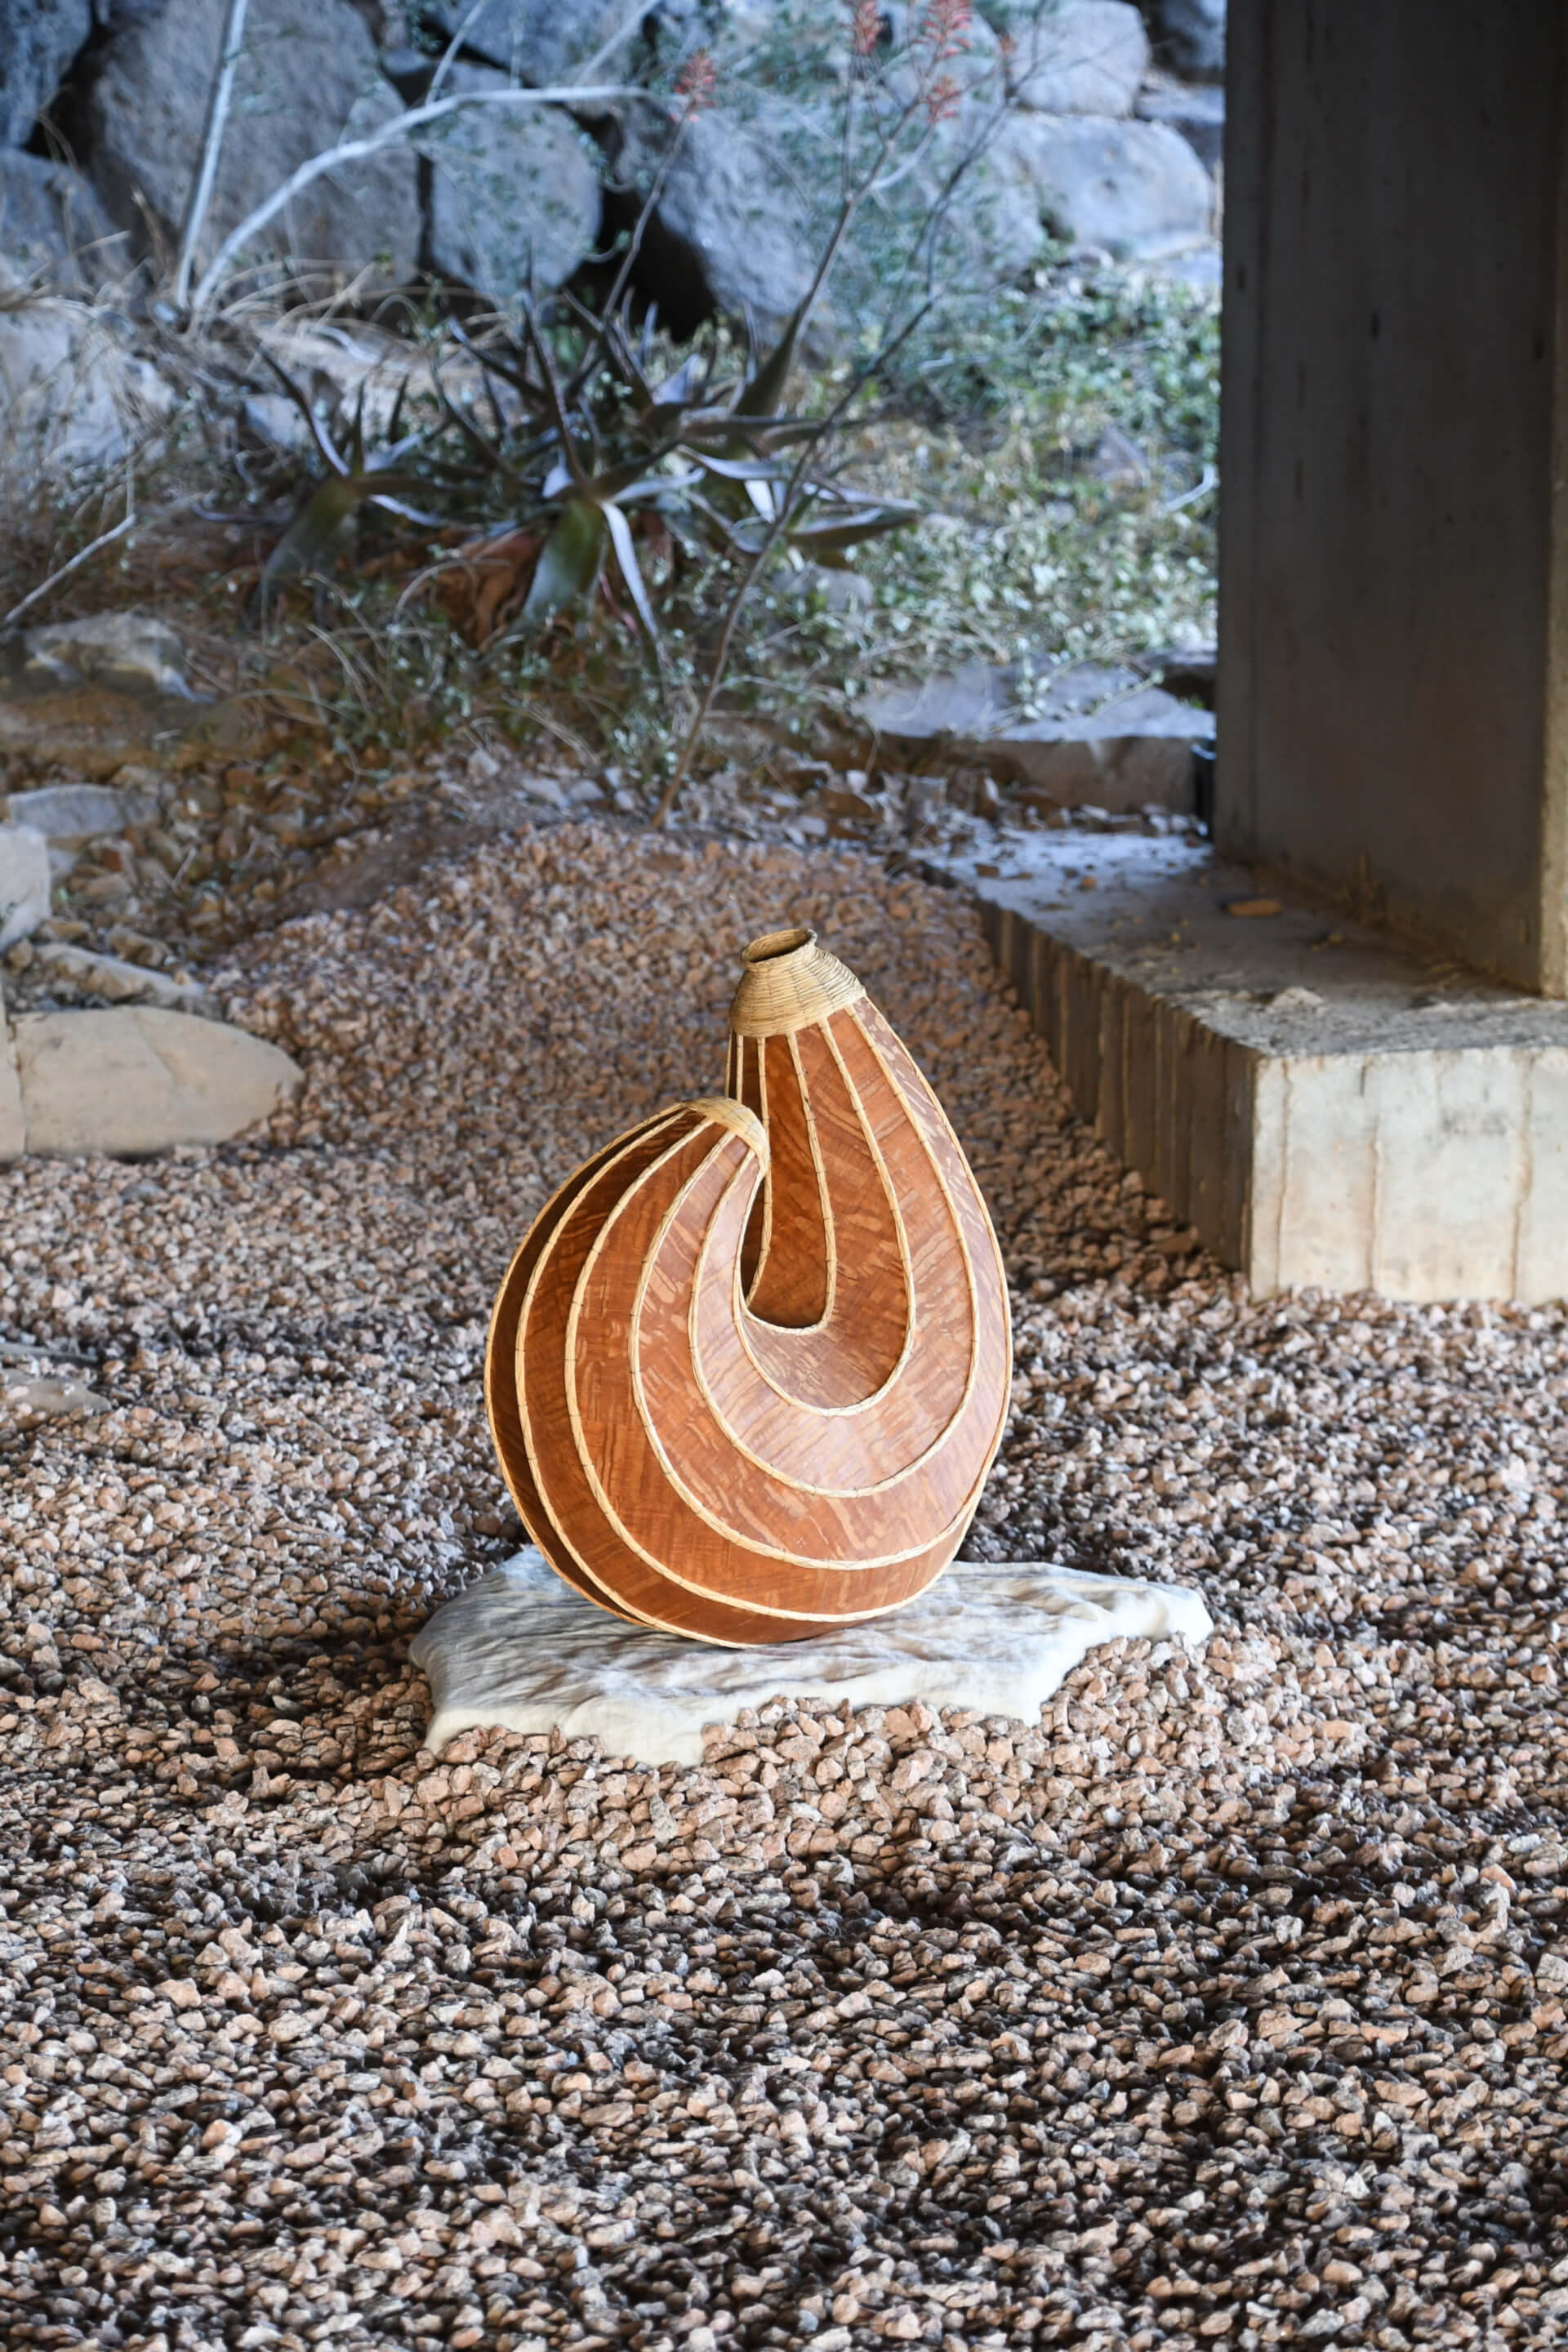 a shell-shaped sculptural artwork